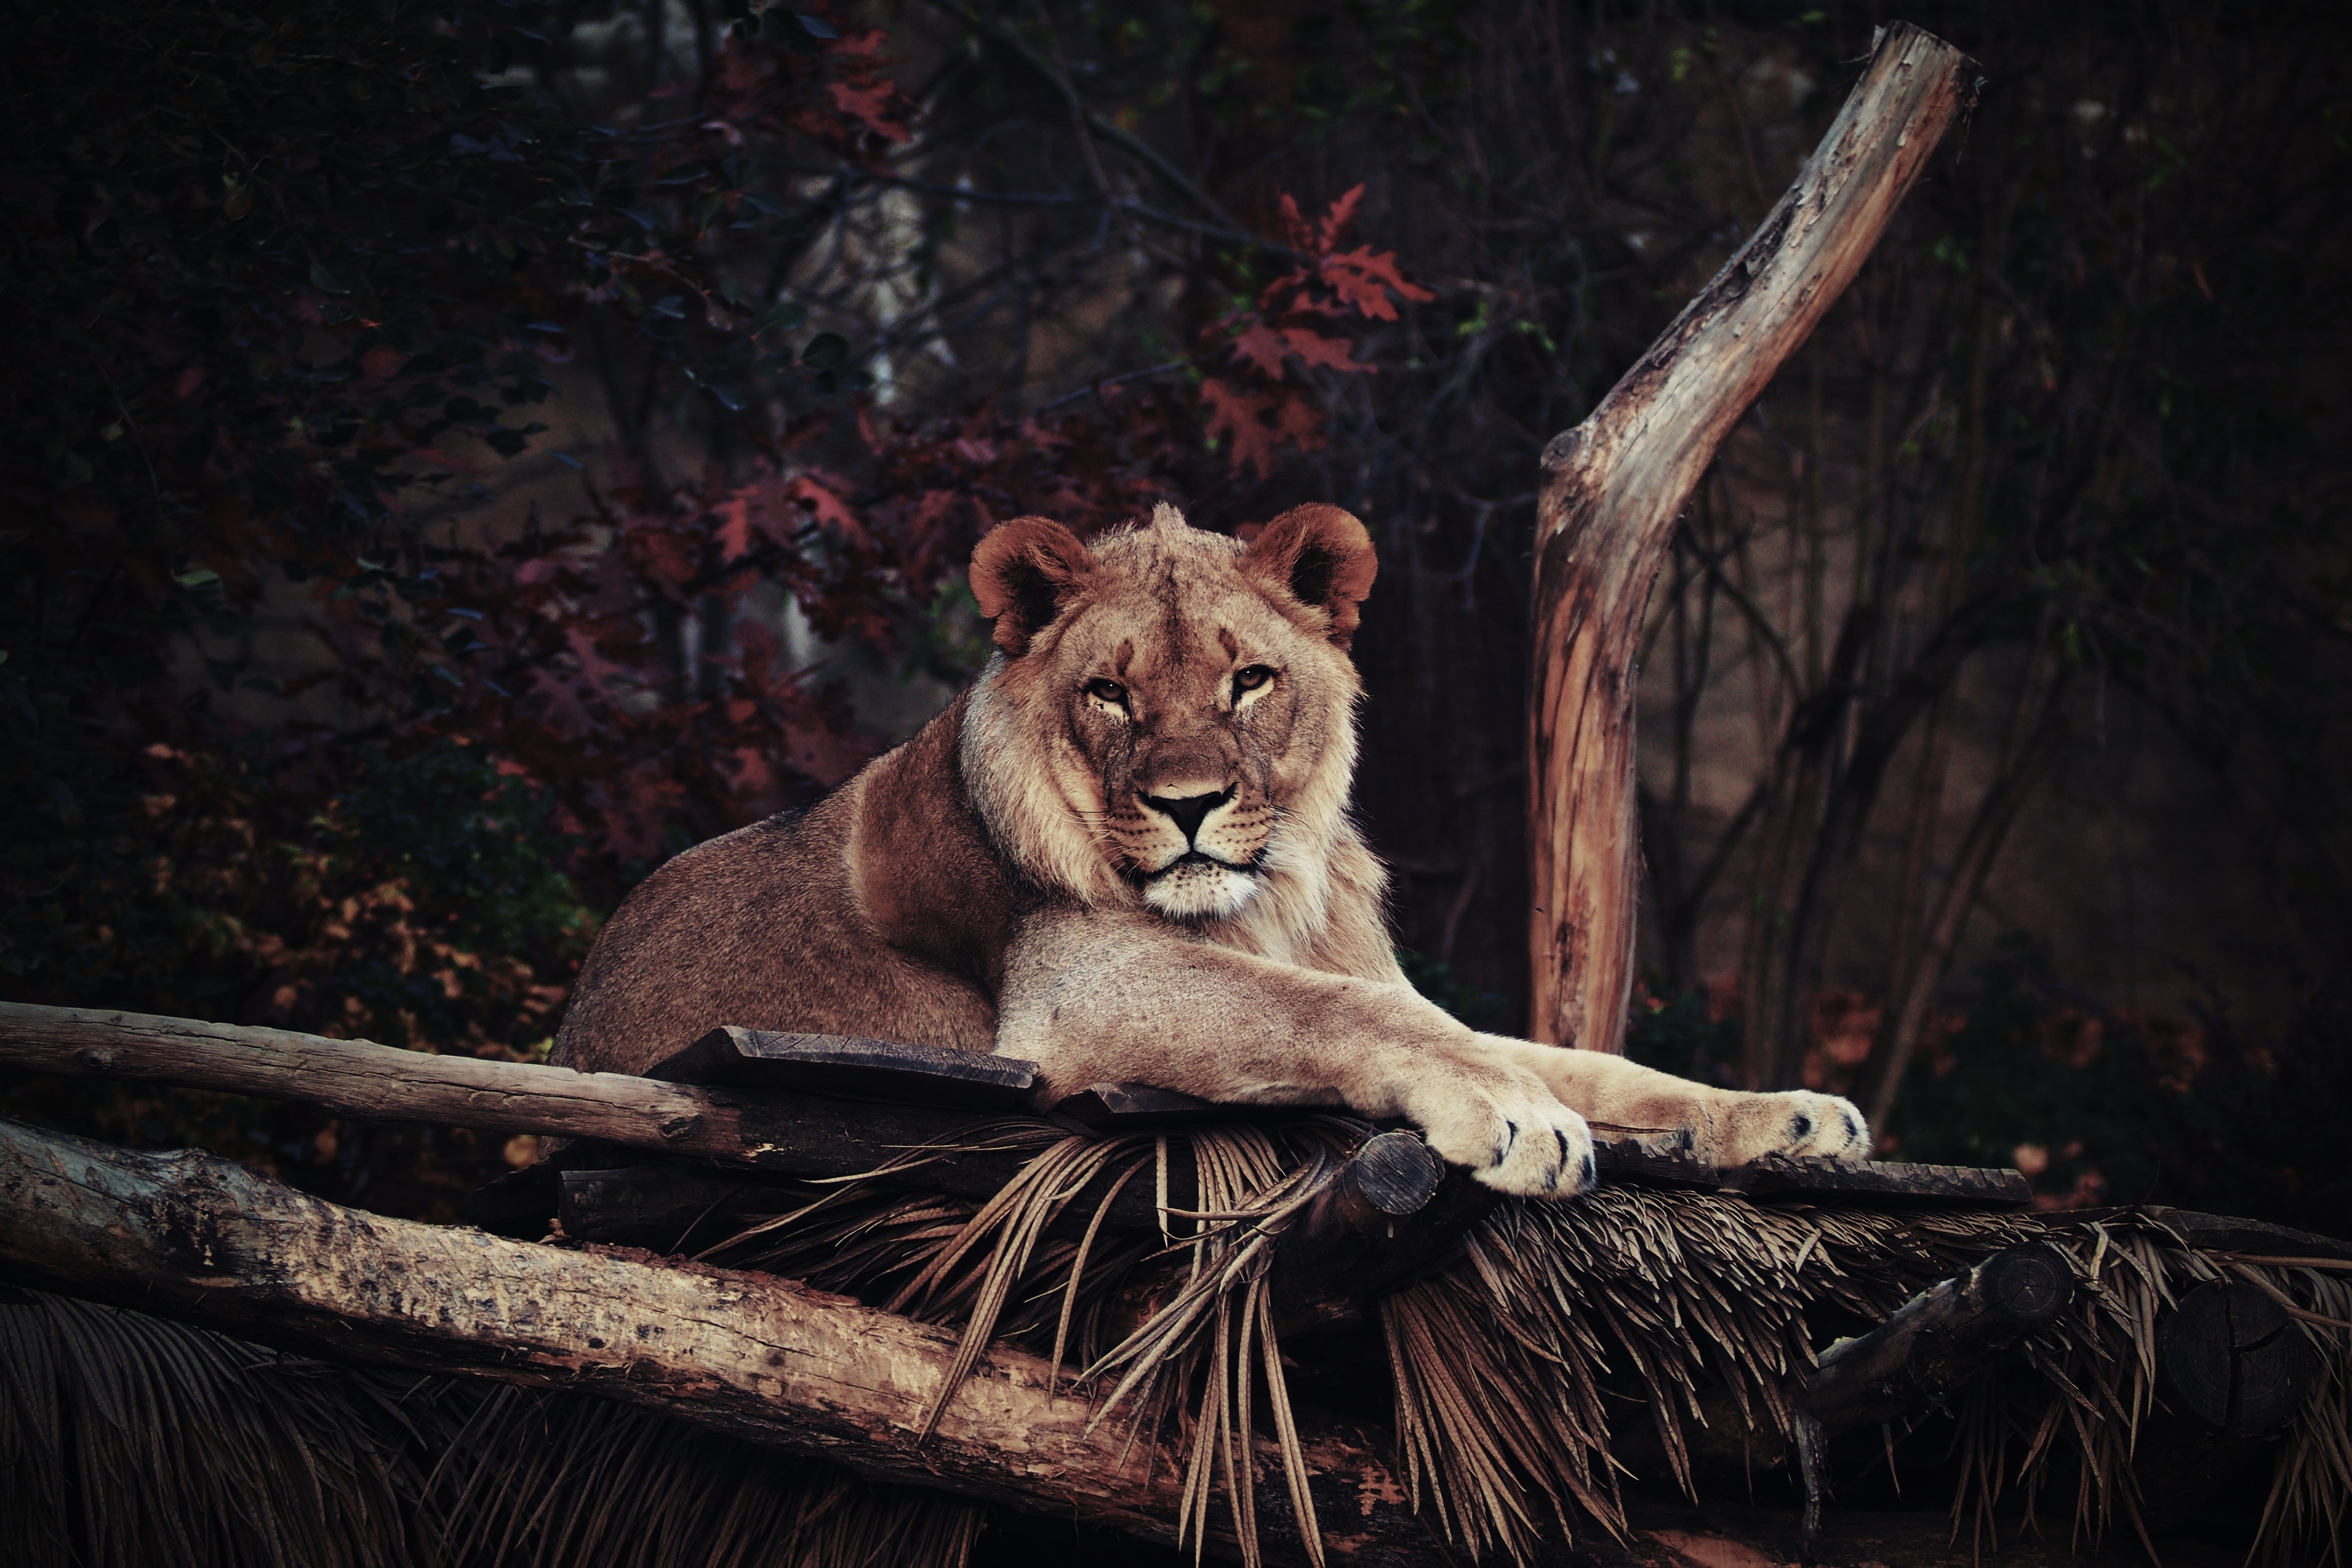 Best Lion Photo · 100% Free Downloads